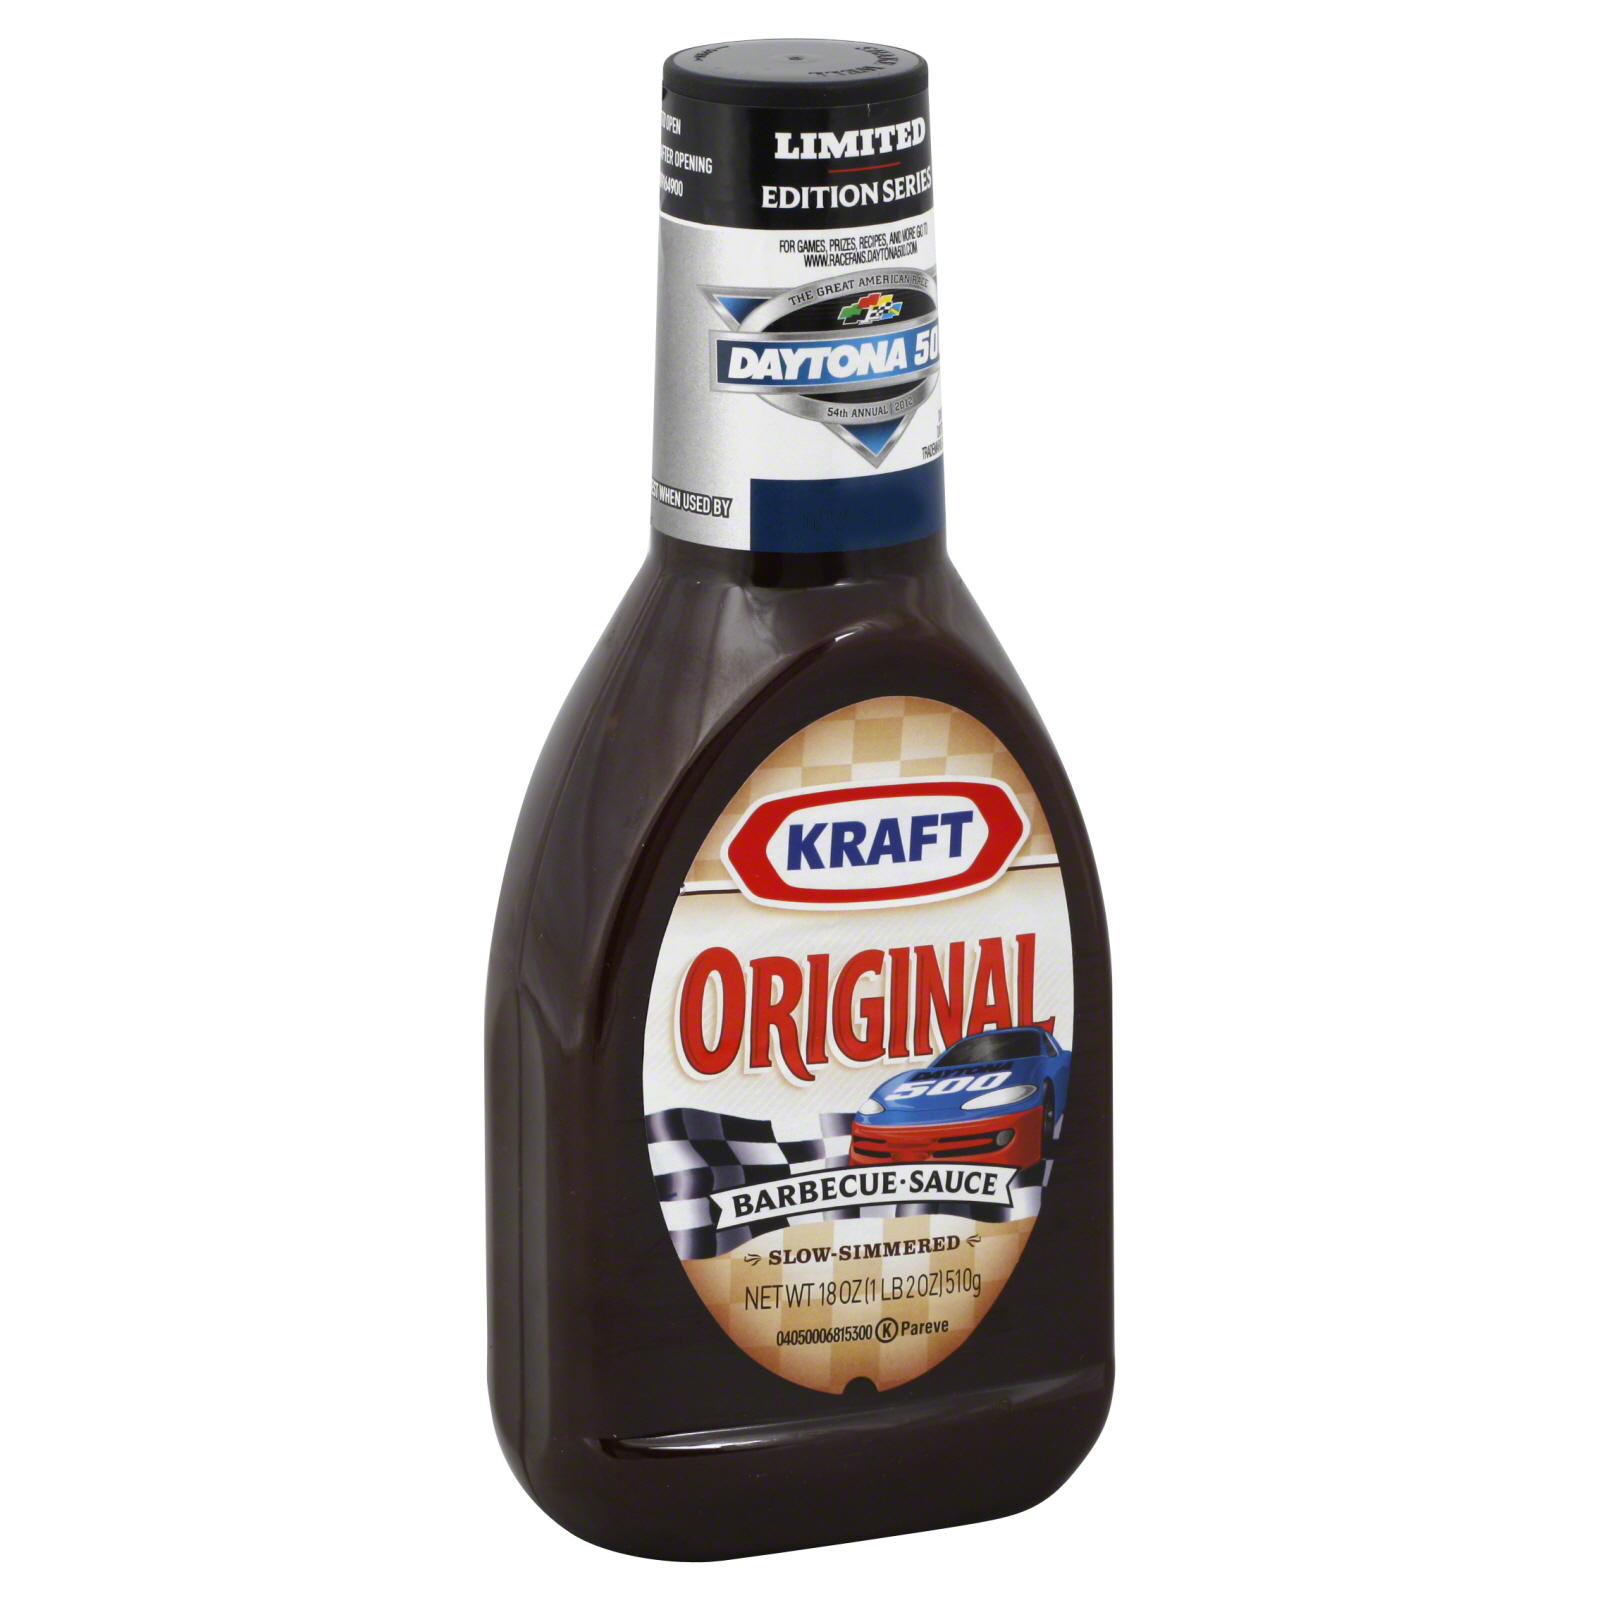 Kraft Barbecue Sauce, Original, 18 oz (1 lb 2 oz) 510 g